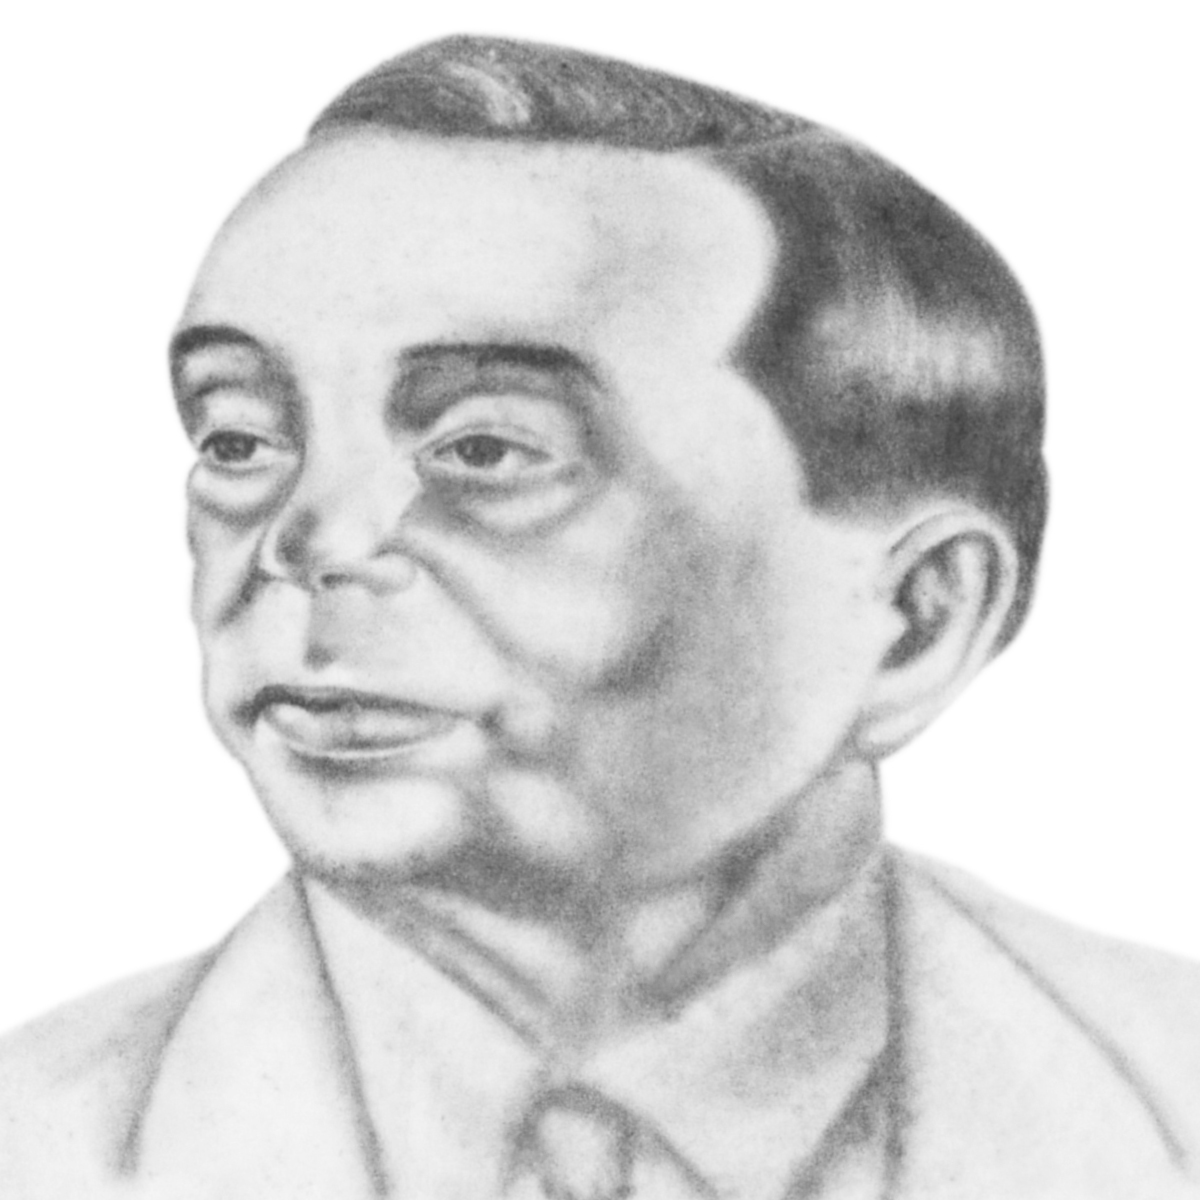  Eduardo Barreto